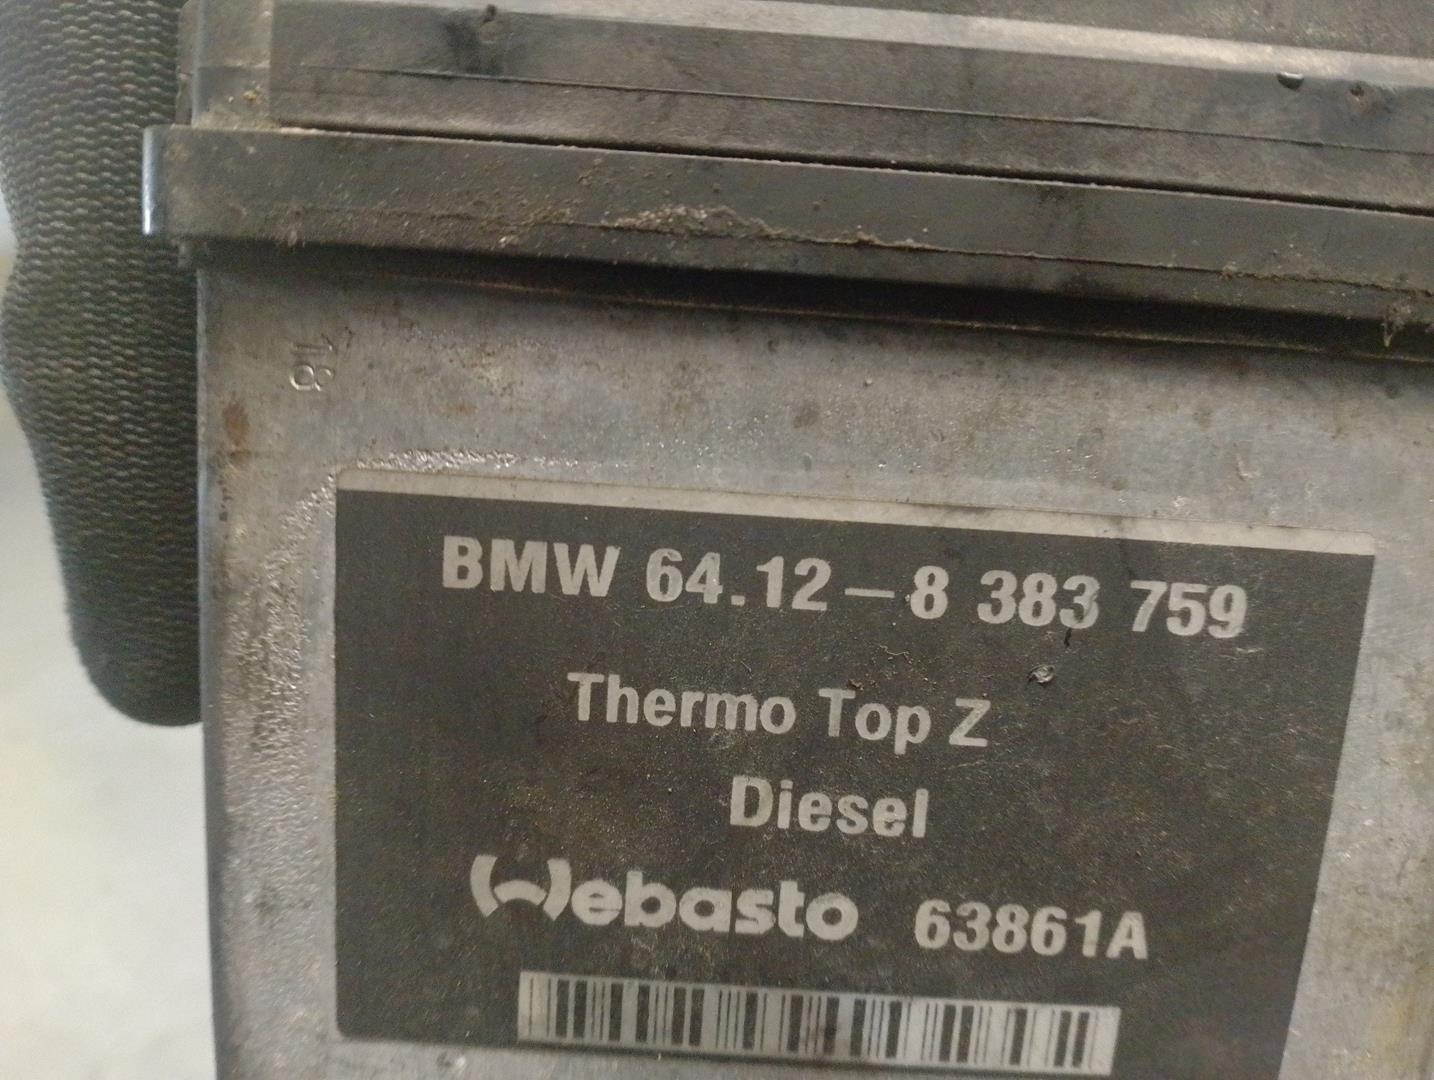 BMW 3 Series E46 (1997-2006) Citau veidu vadības bloki 64128383759, 63861A, WEBASTO 19921804